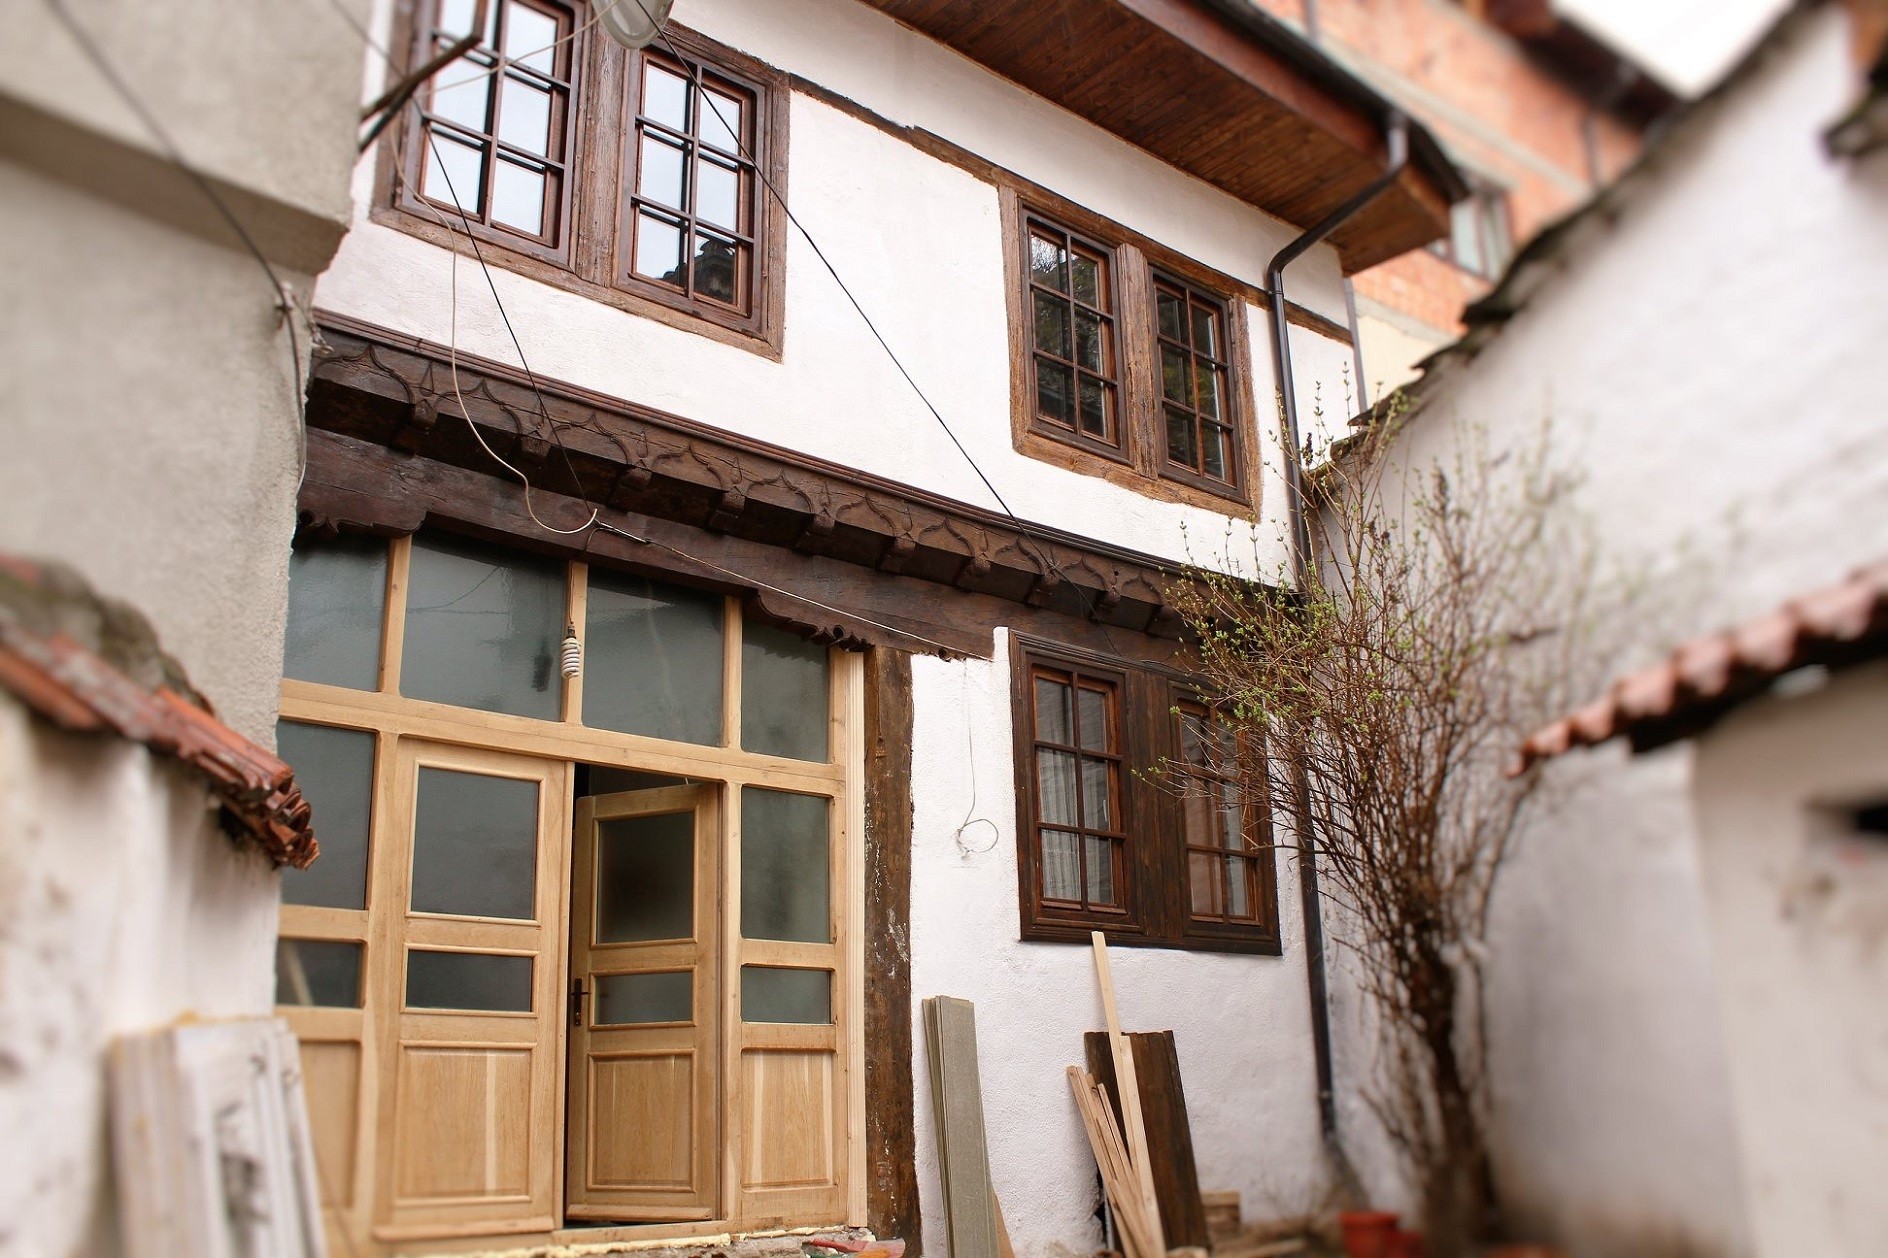 Restaurohet shtëpia e familjes Kolshi dhe Skenderi në Prizren